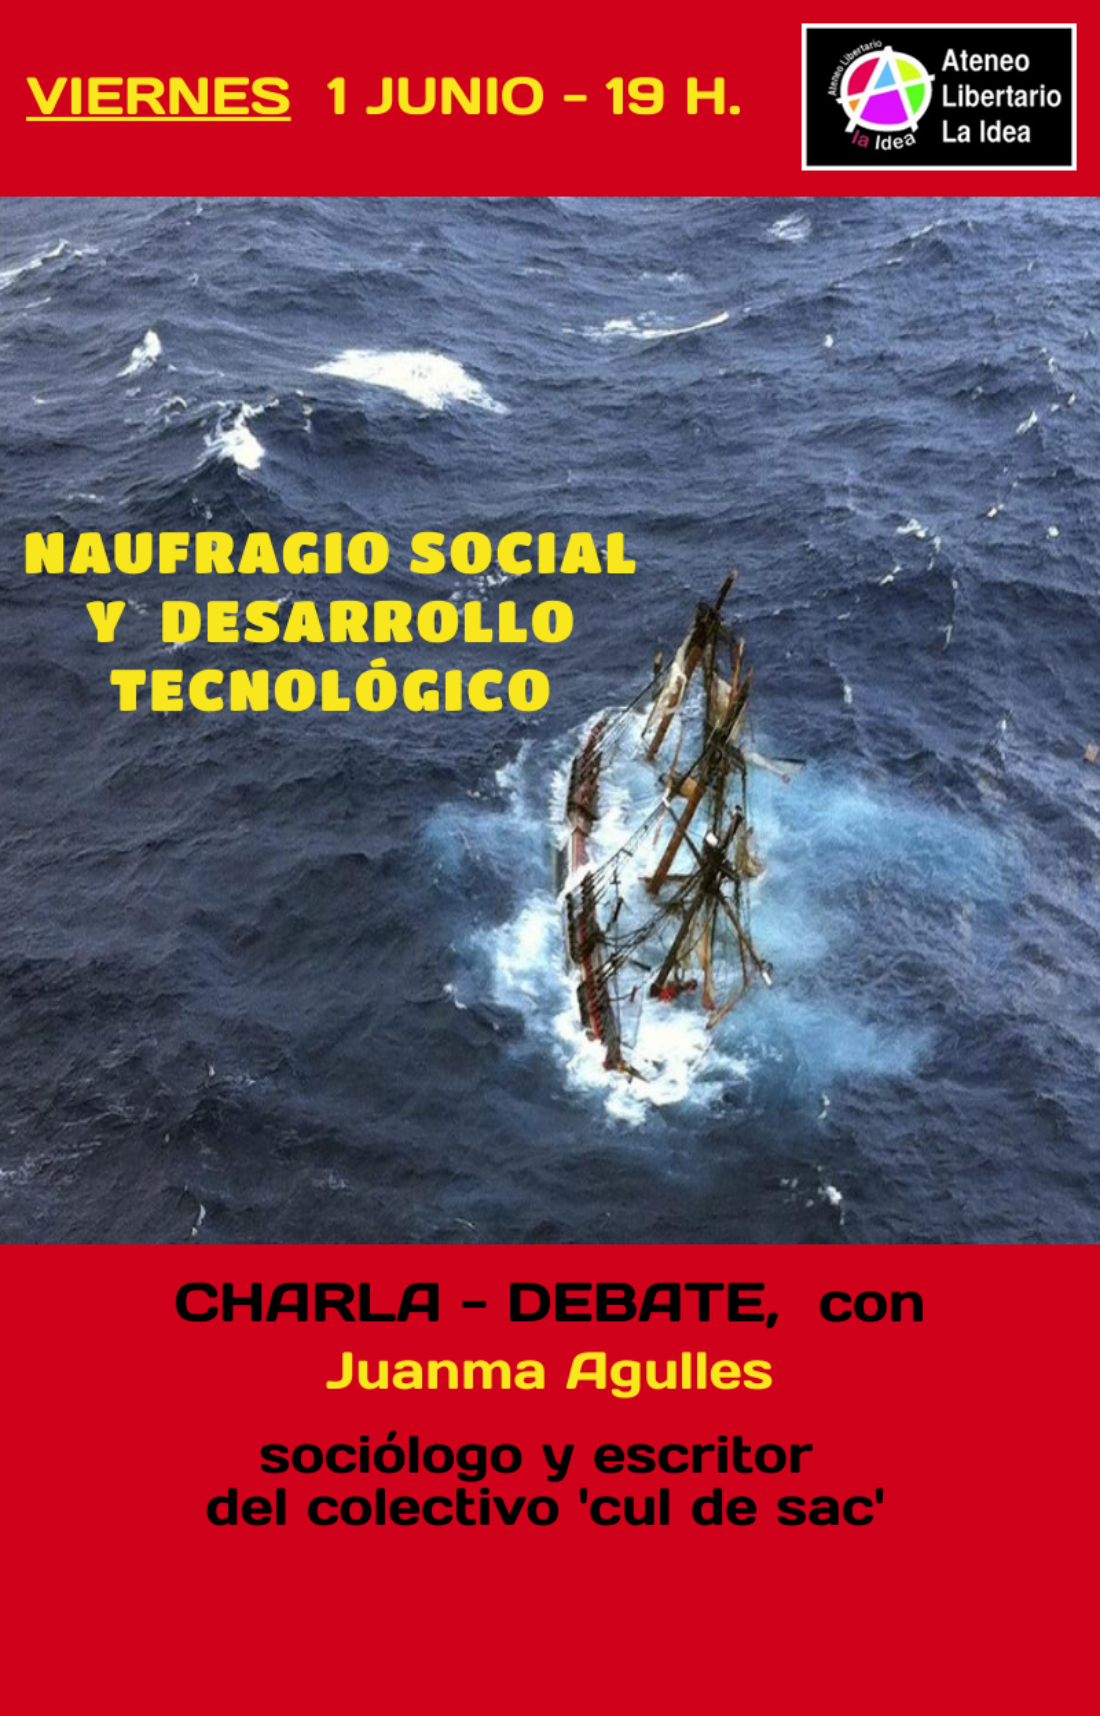 1-J: Charla -debate «Naufragio social y desarrollo tecnológico»